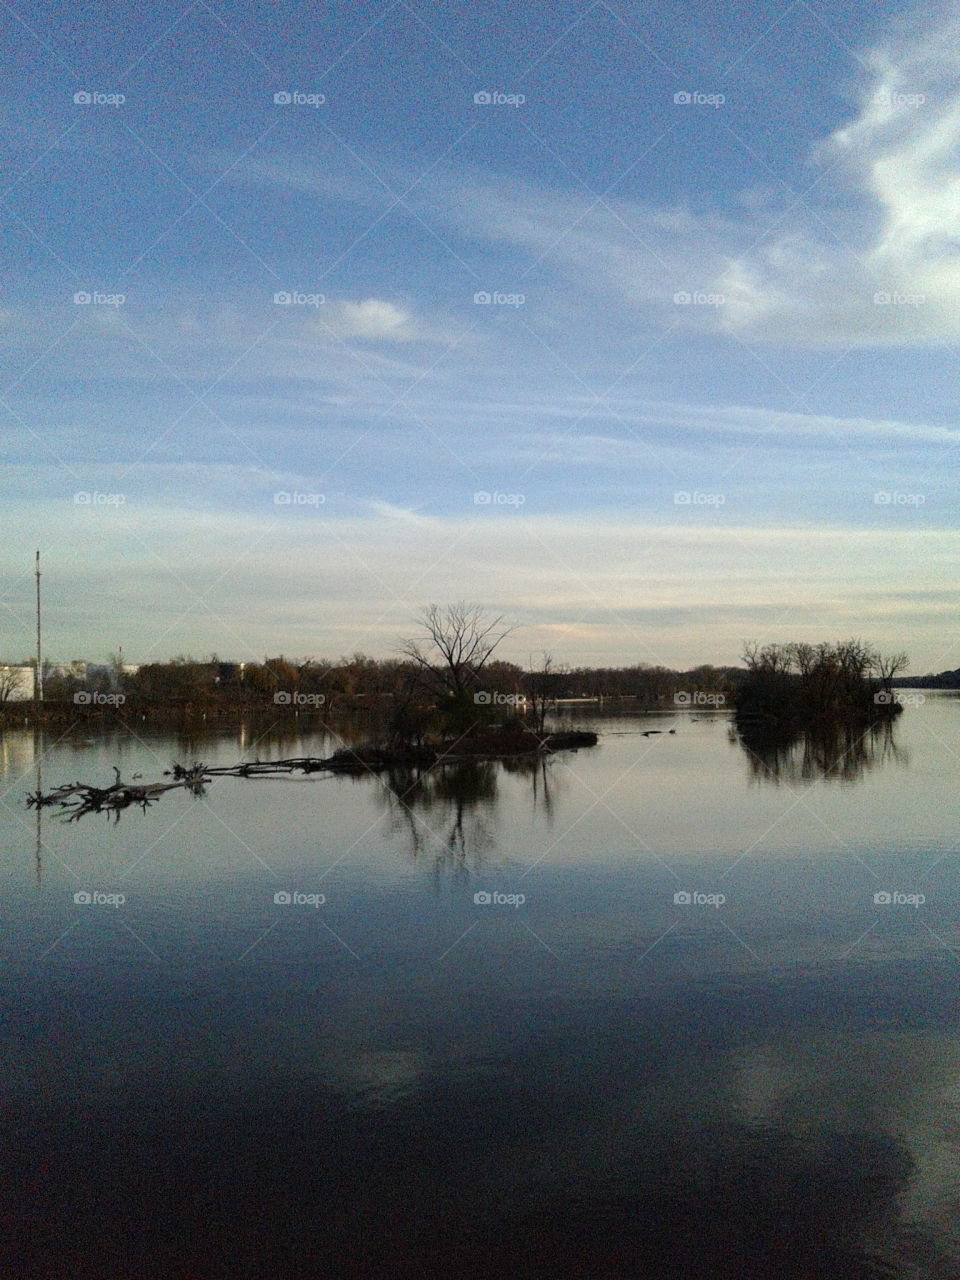 Reflection, Water, Lake, Landscape, Sunset